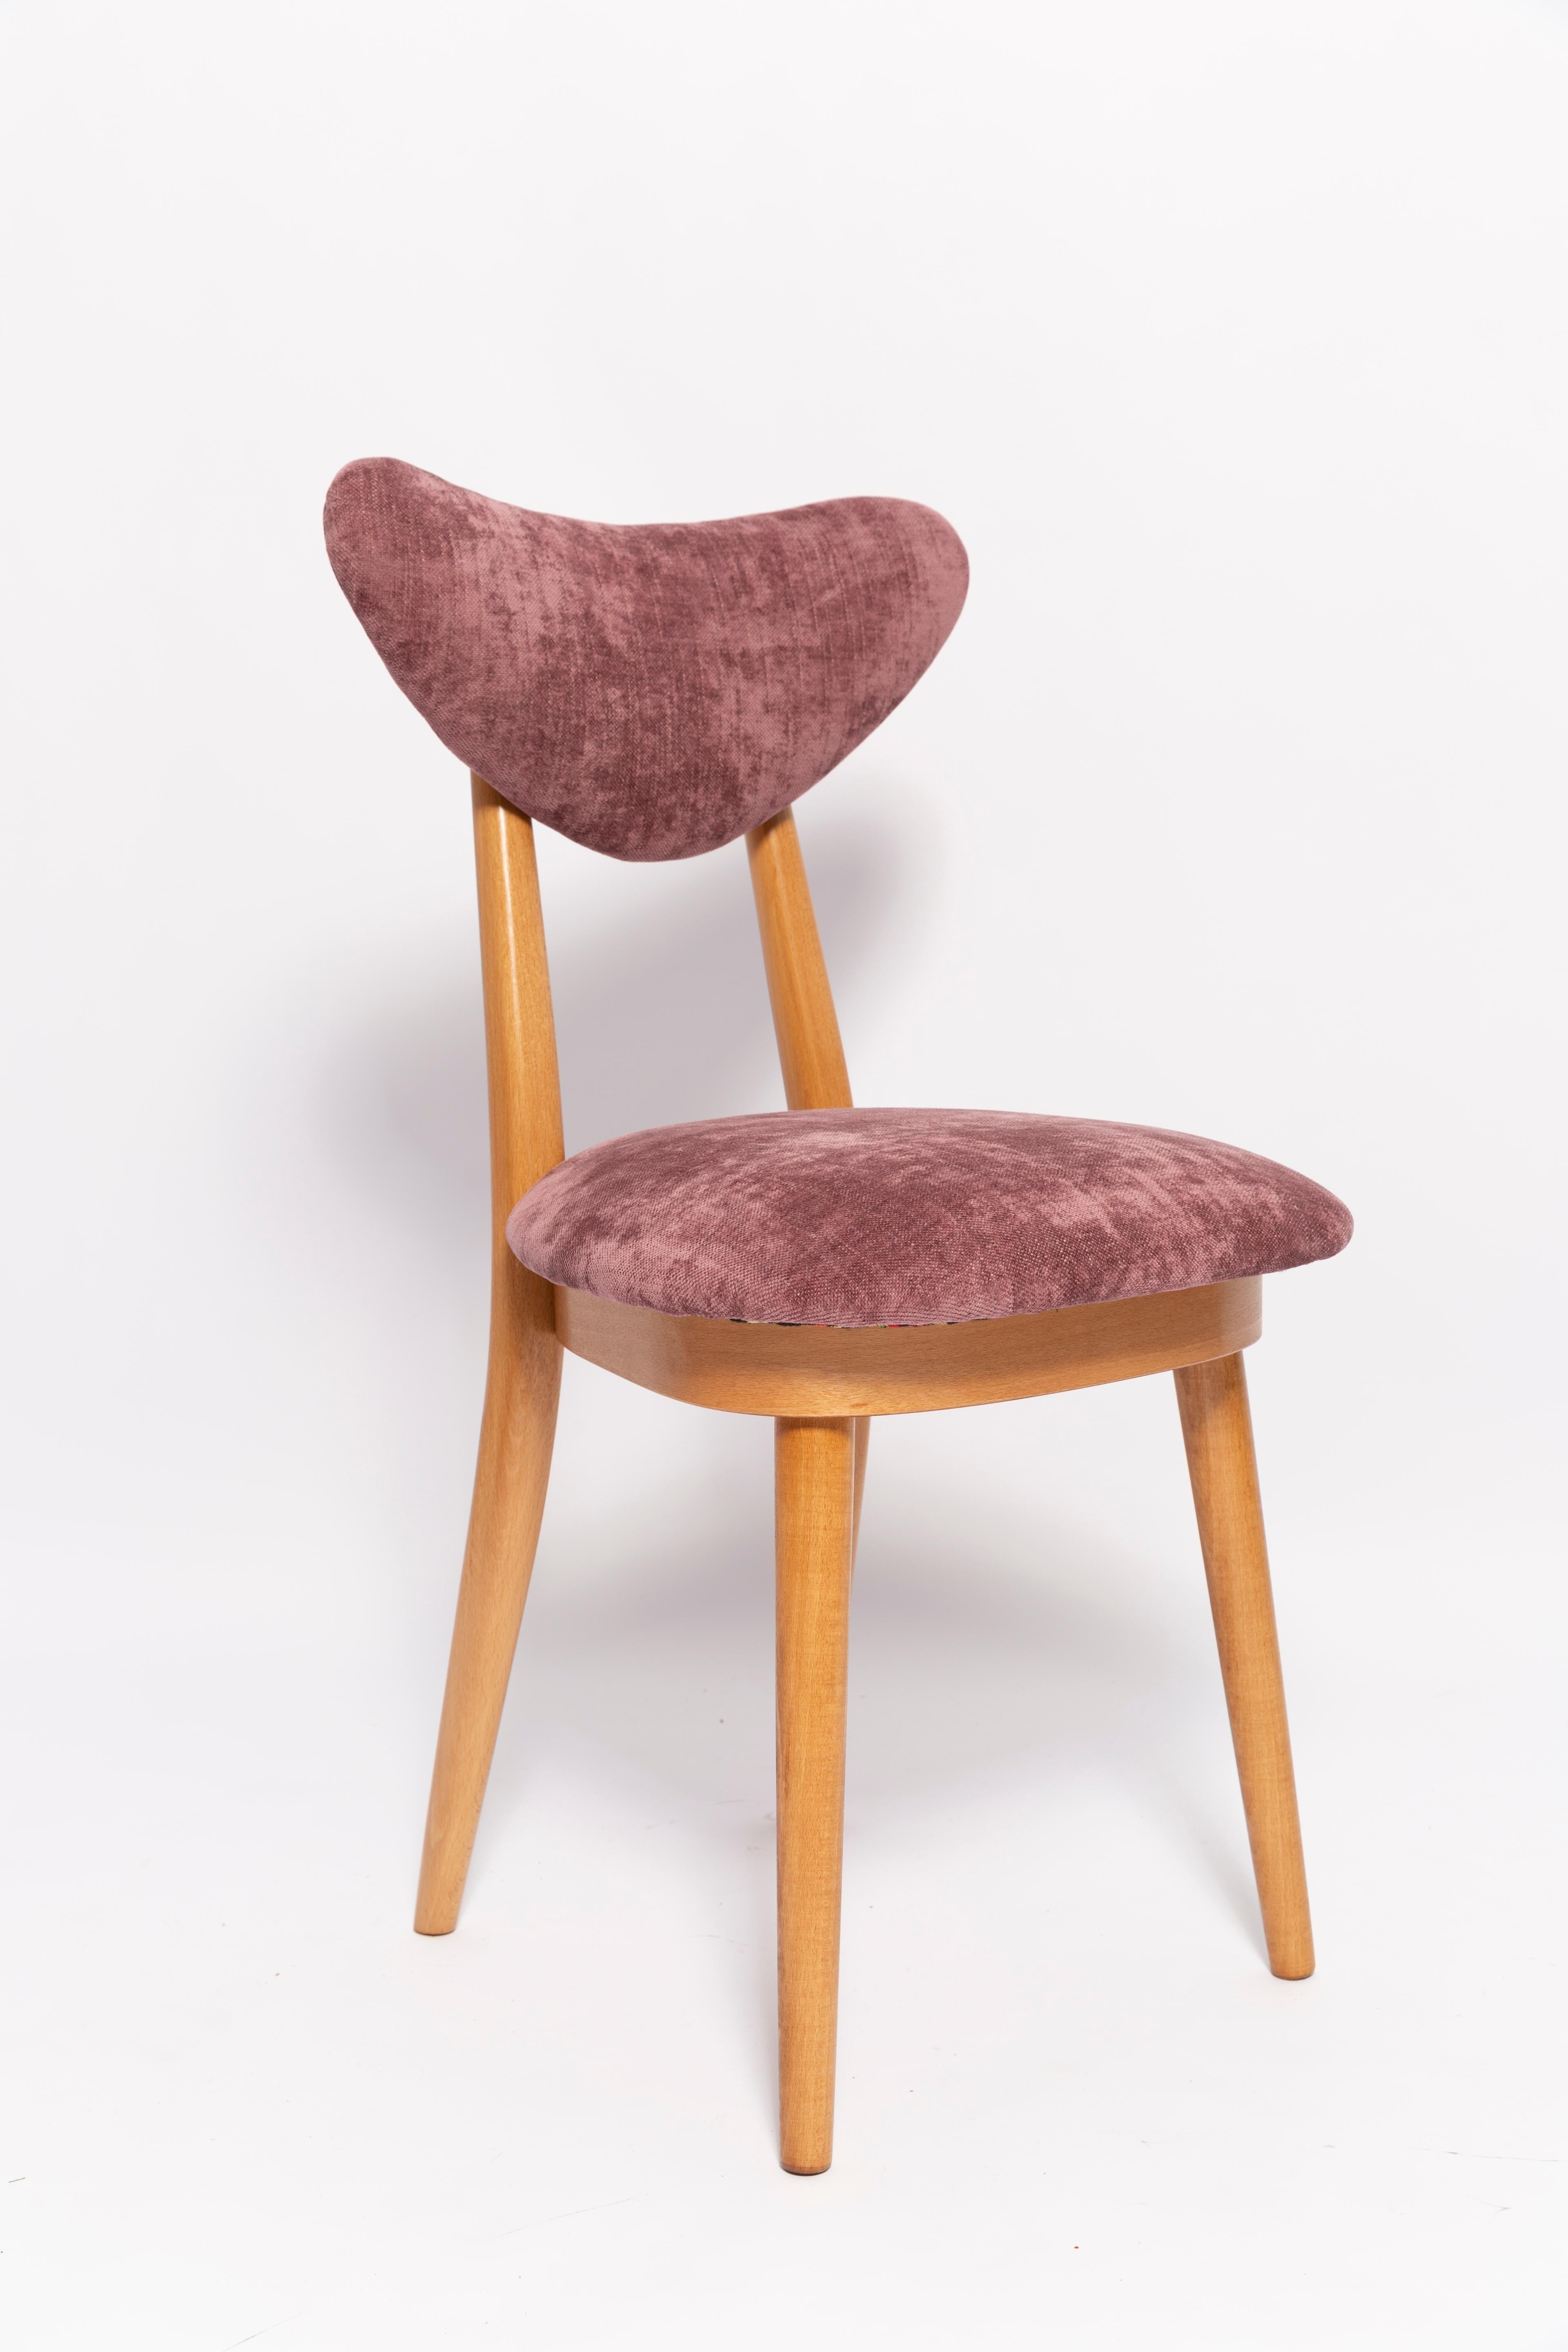 20th Century Midcentury Plum Violet Velvet, Light Wood Heart Chair, Europe, 1960s For Sale